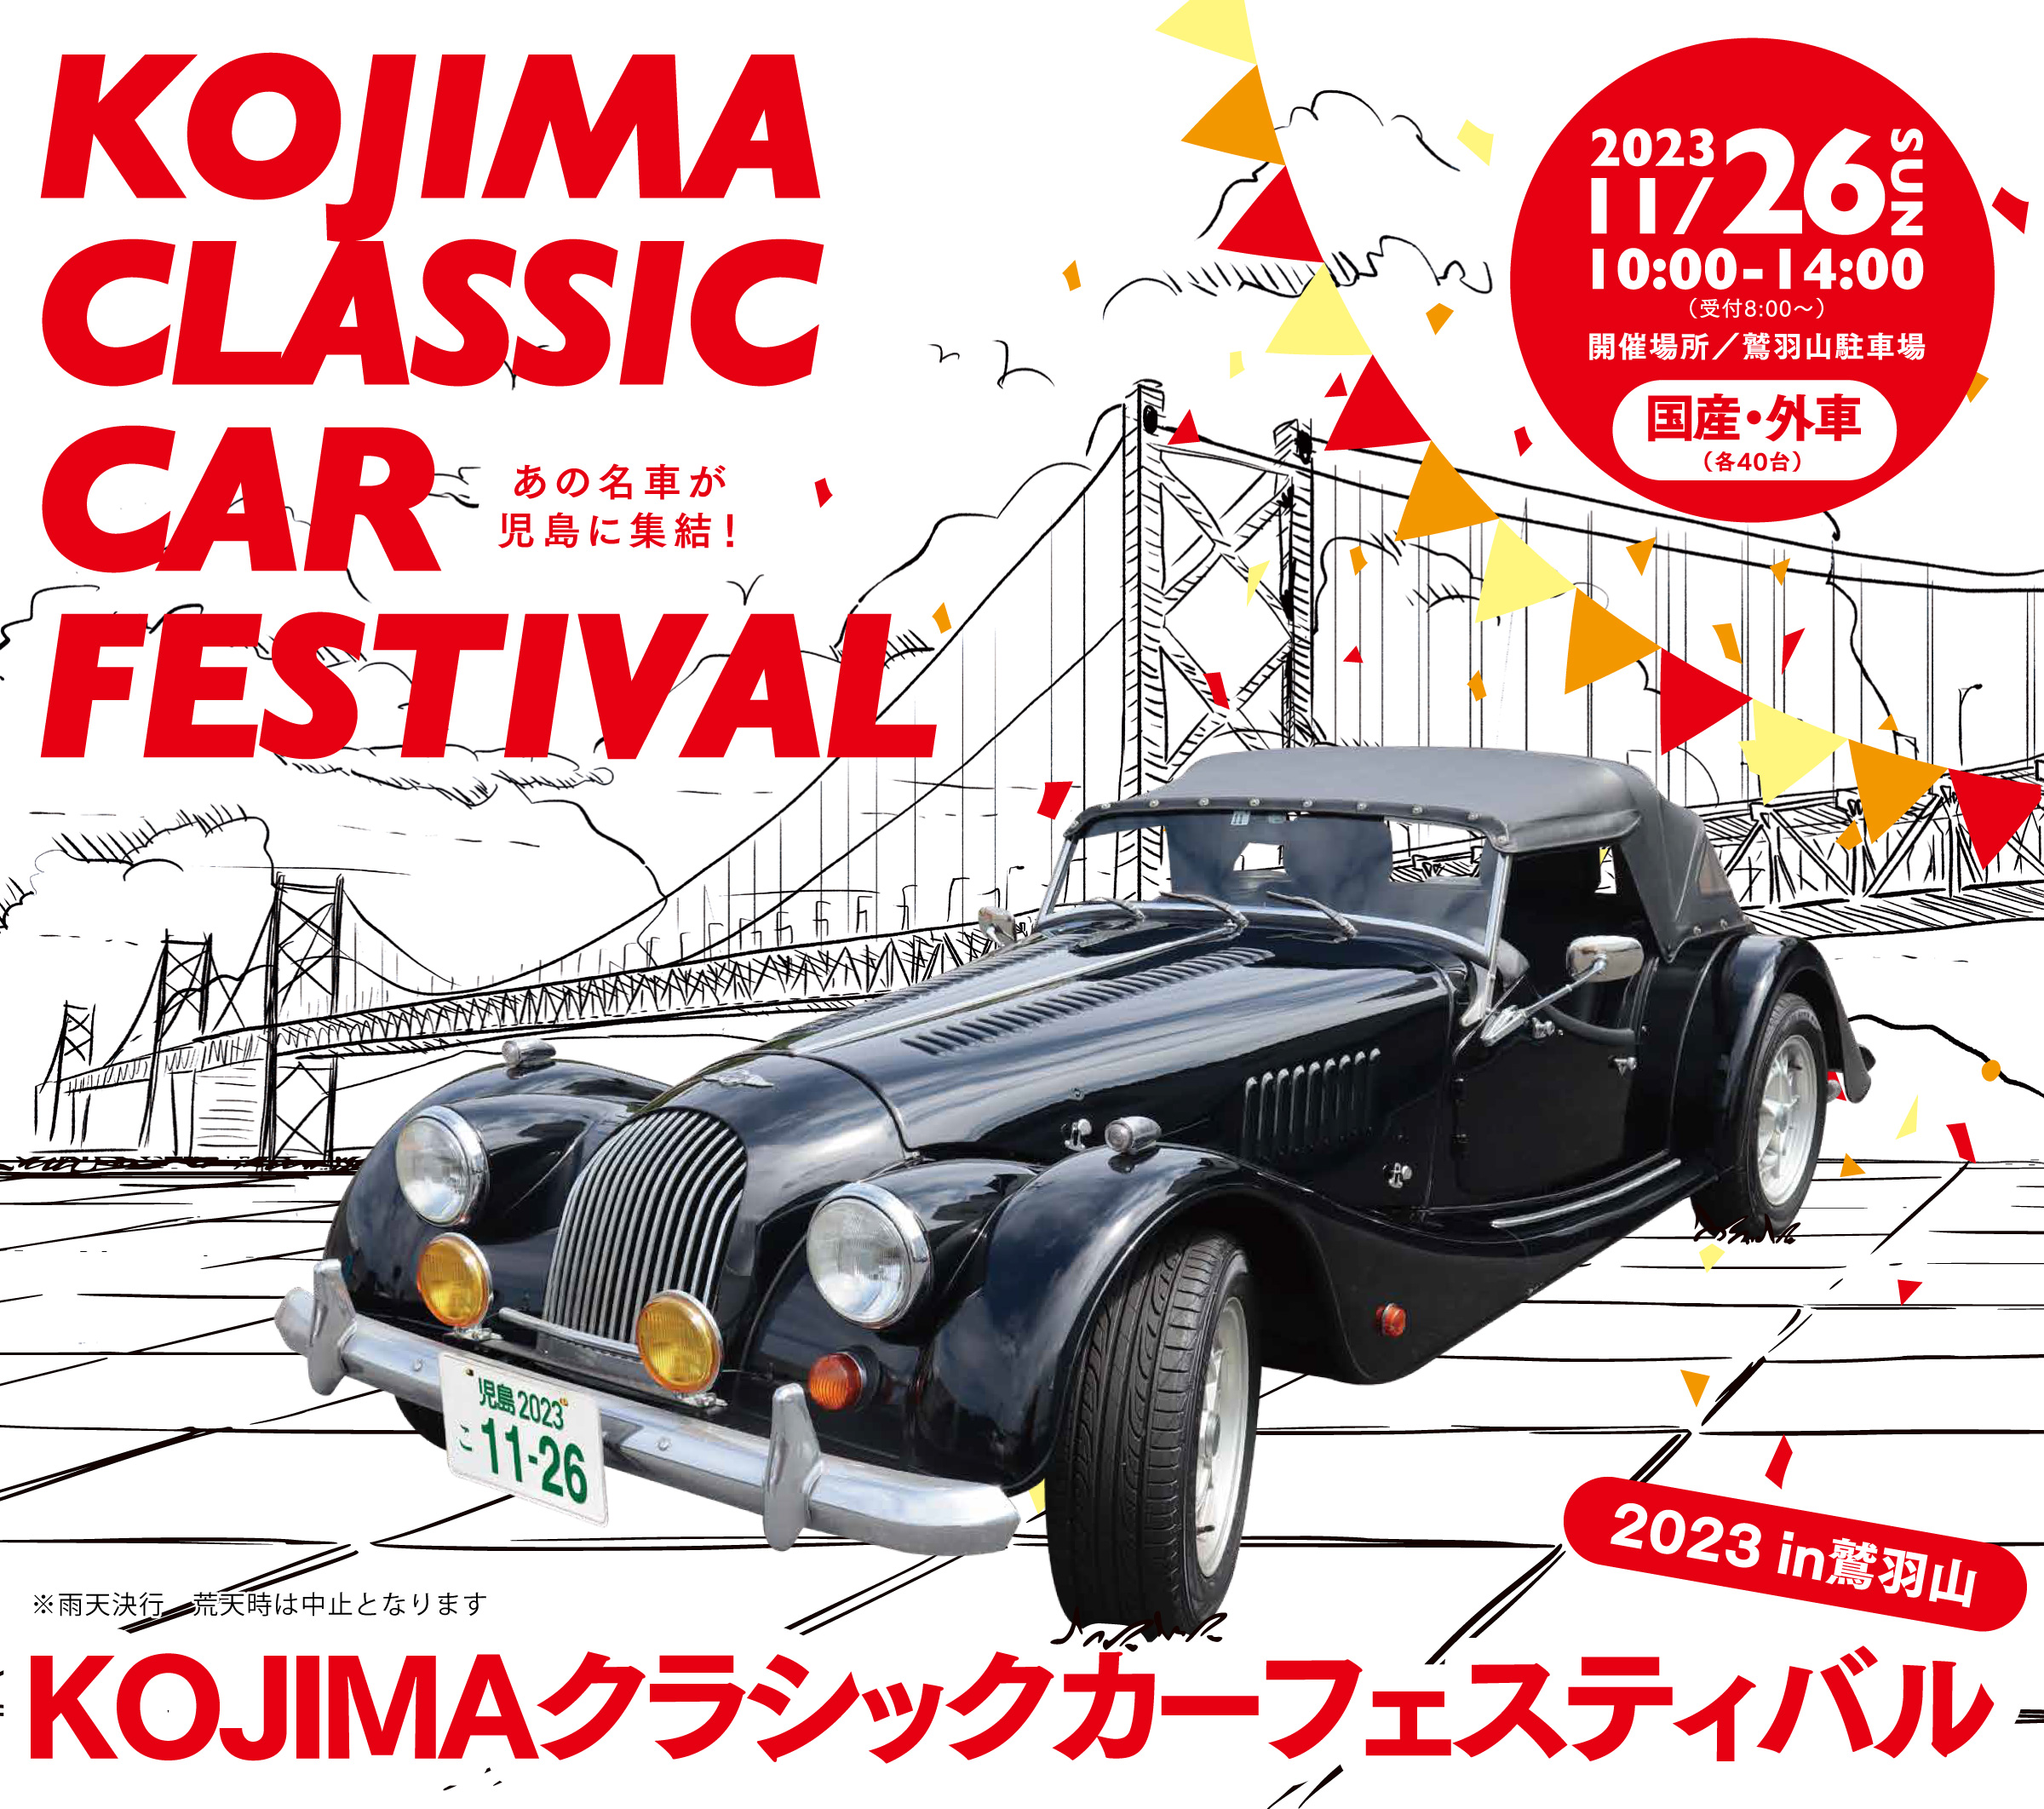 KOJIMAクラシックカーフェスティバル2023 in 鷲羽山